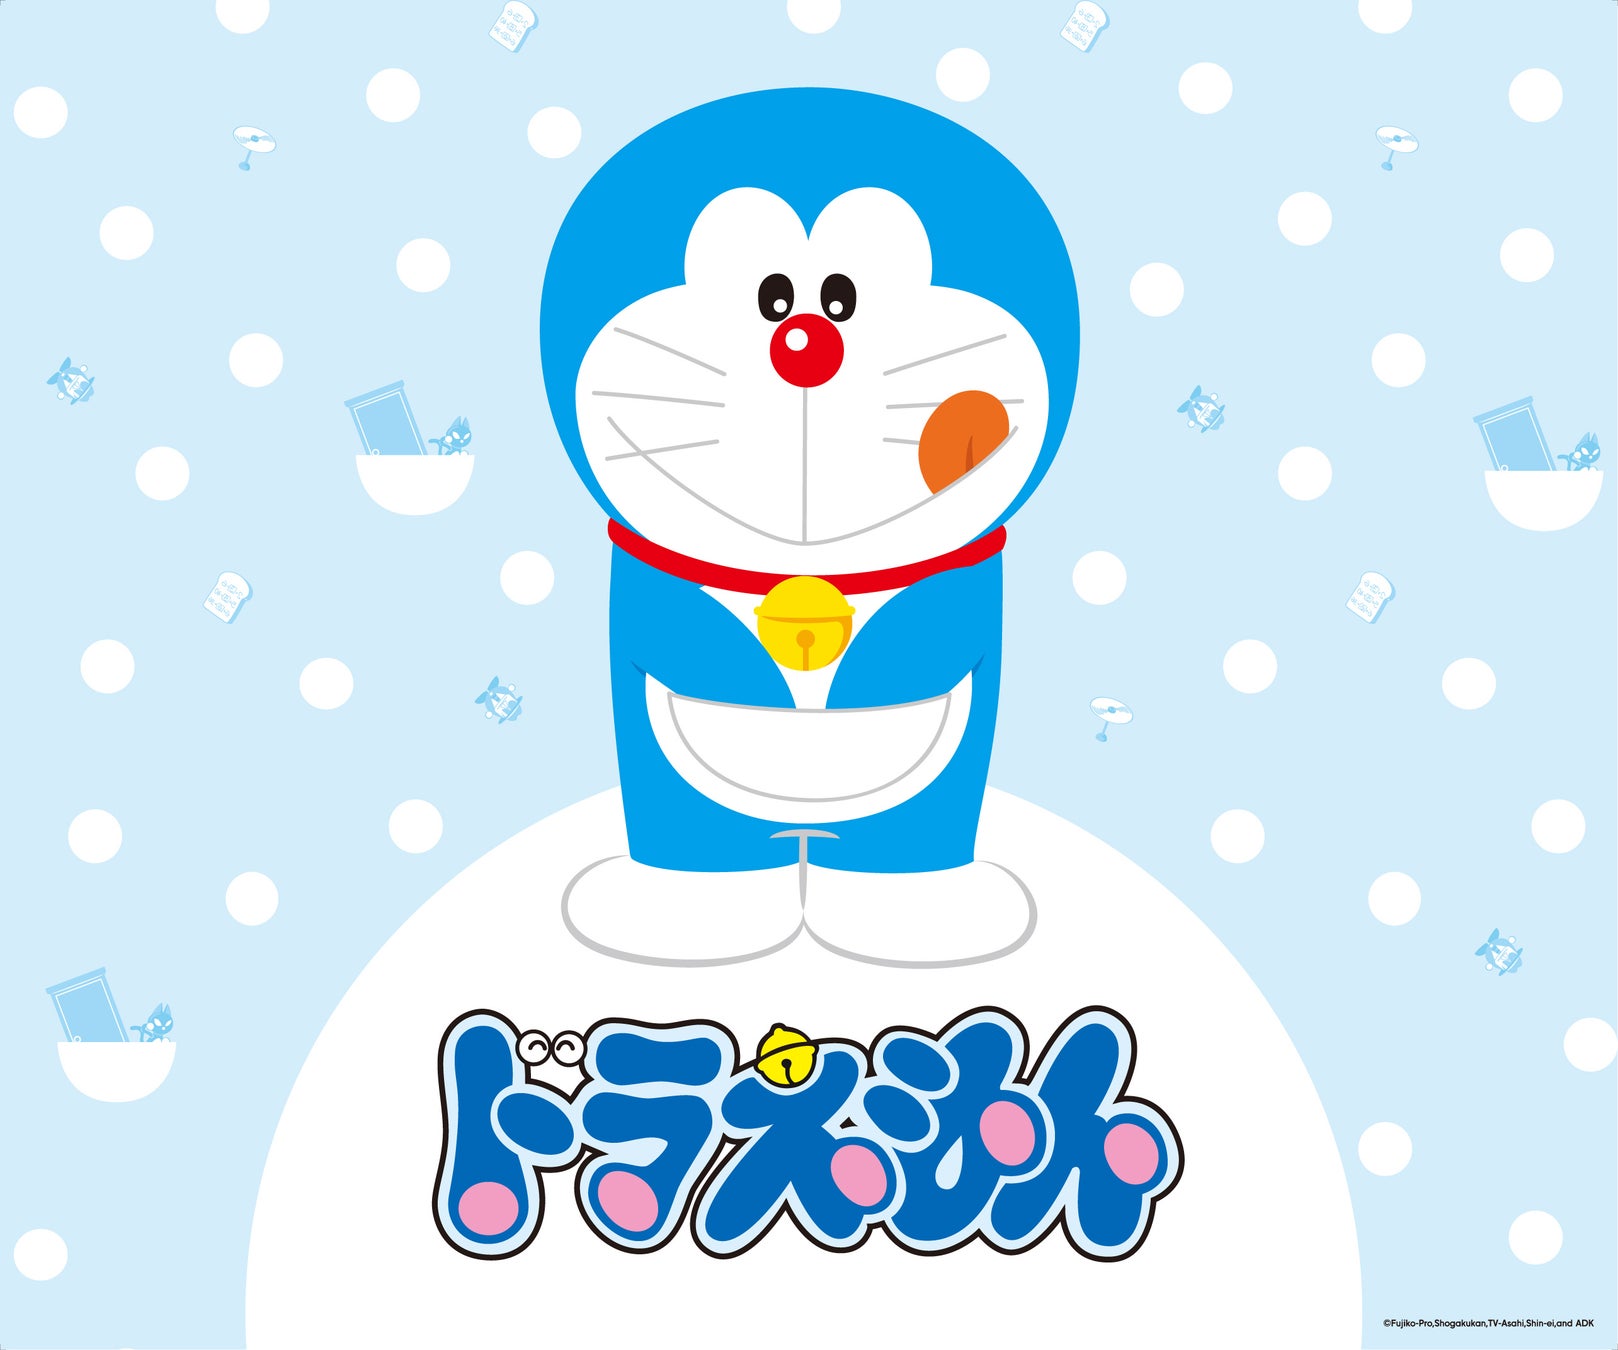 ドラえもん / Doraemon